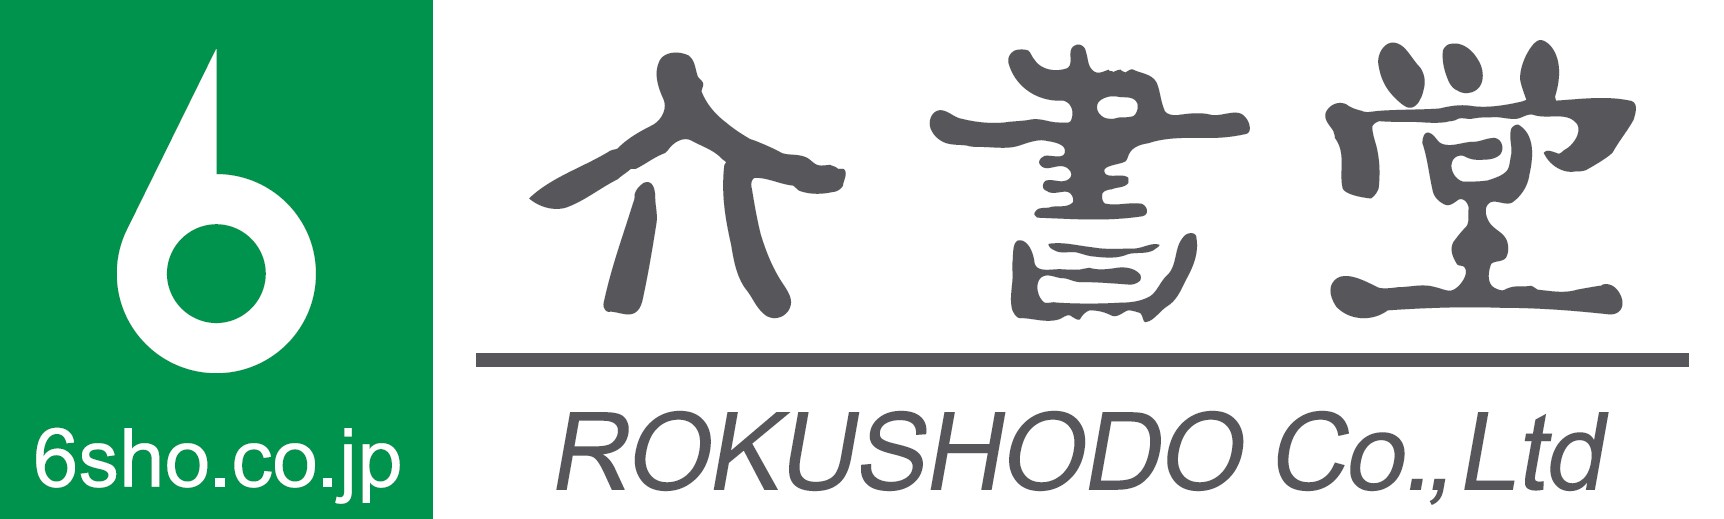 株式会社六書堂 のロゴ